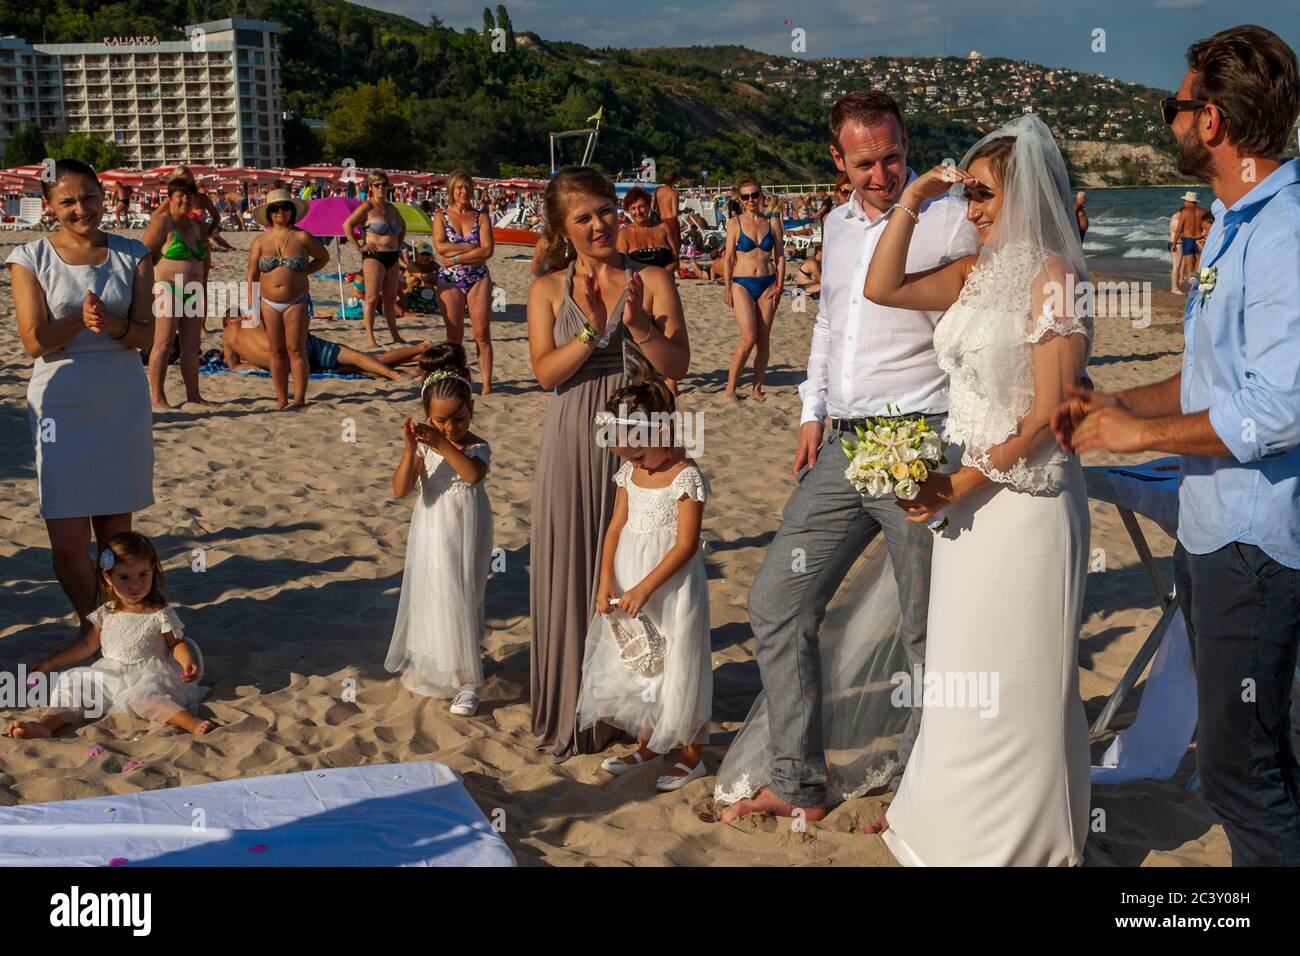 Sotto gli occhi di bagnanti stranieri una cerimonia nuziale bulgara si svolge volentieri sulla spiaggia del mare nero Foto Stock